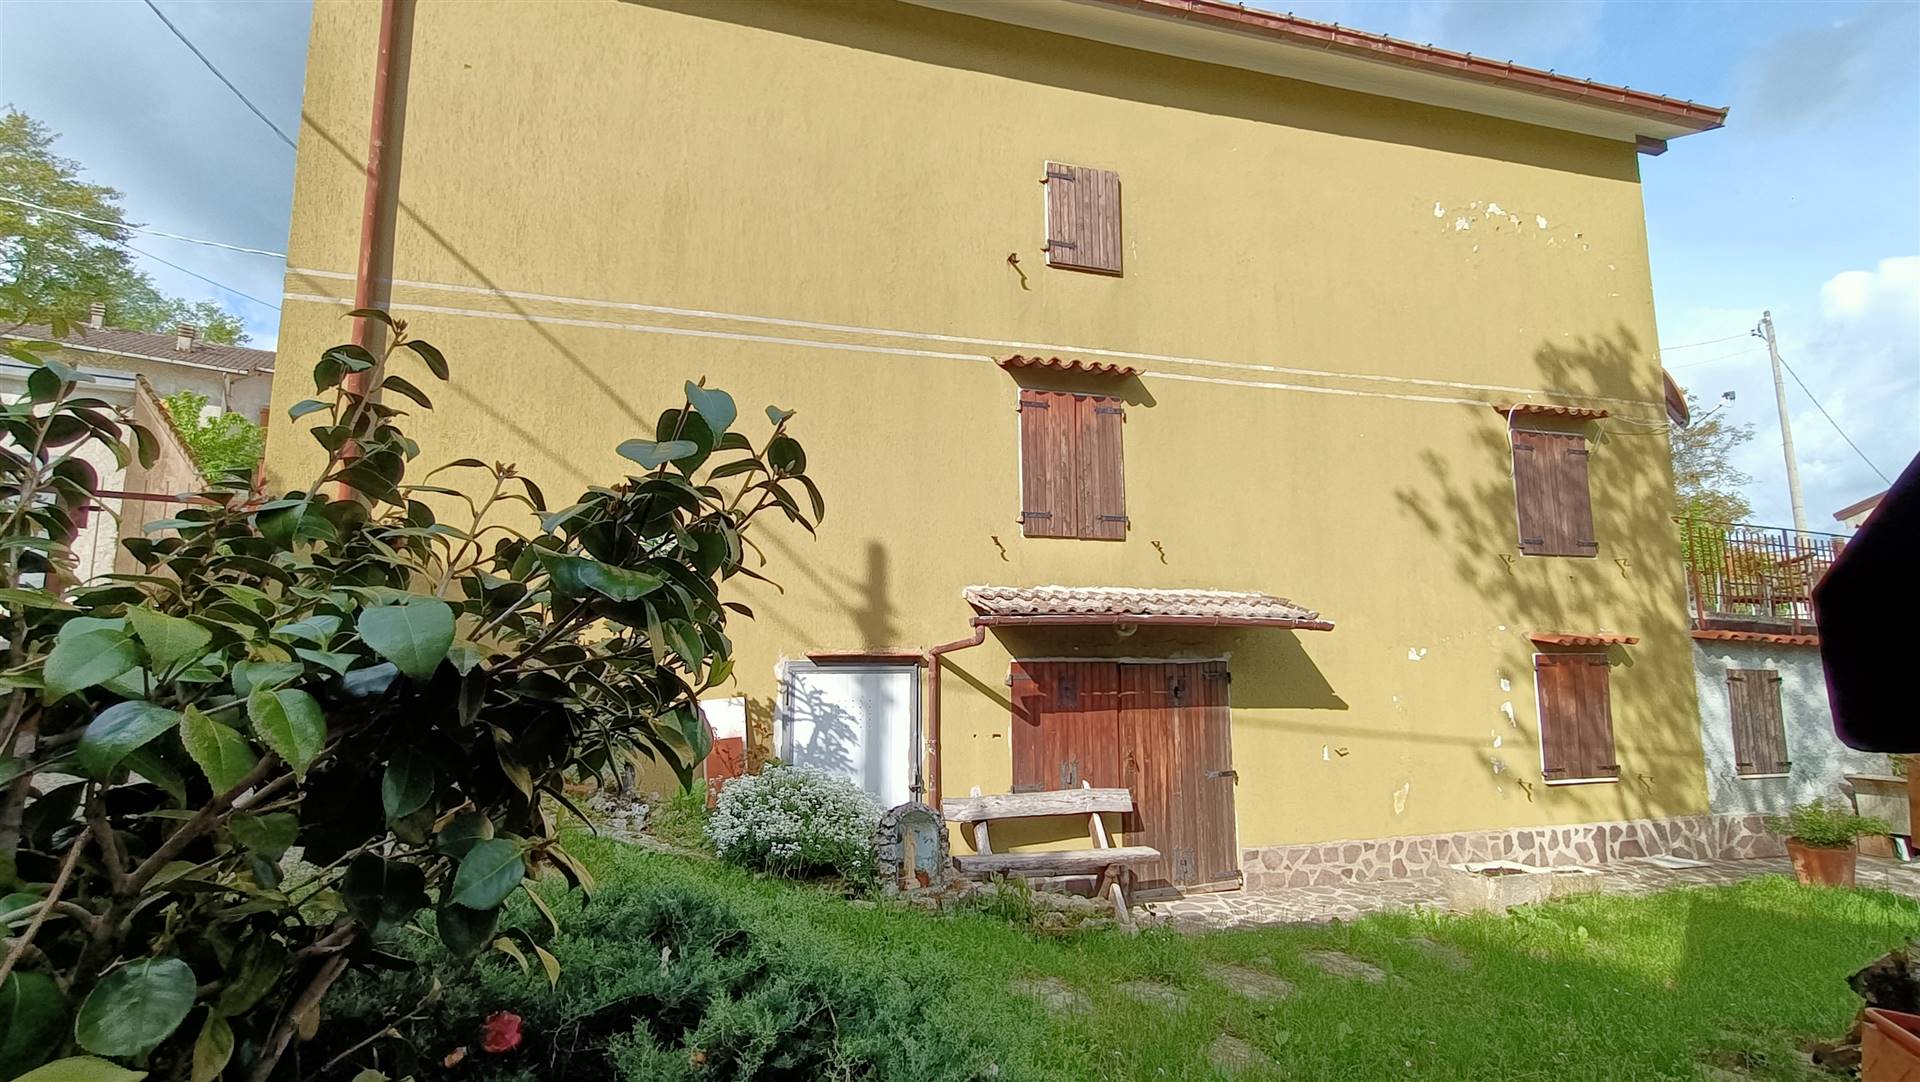 Soluzione Indipendente in vendita a Castiglione dei Pepoli, 6 locali, prezzo € 85.000 | PortaleAgenzieImmobiliari.it